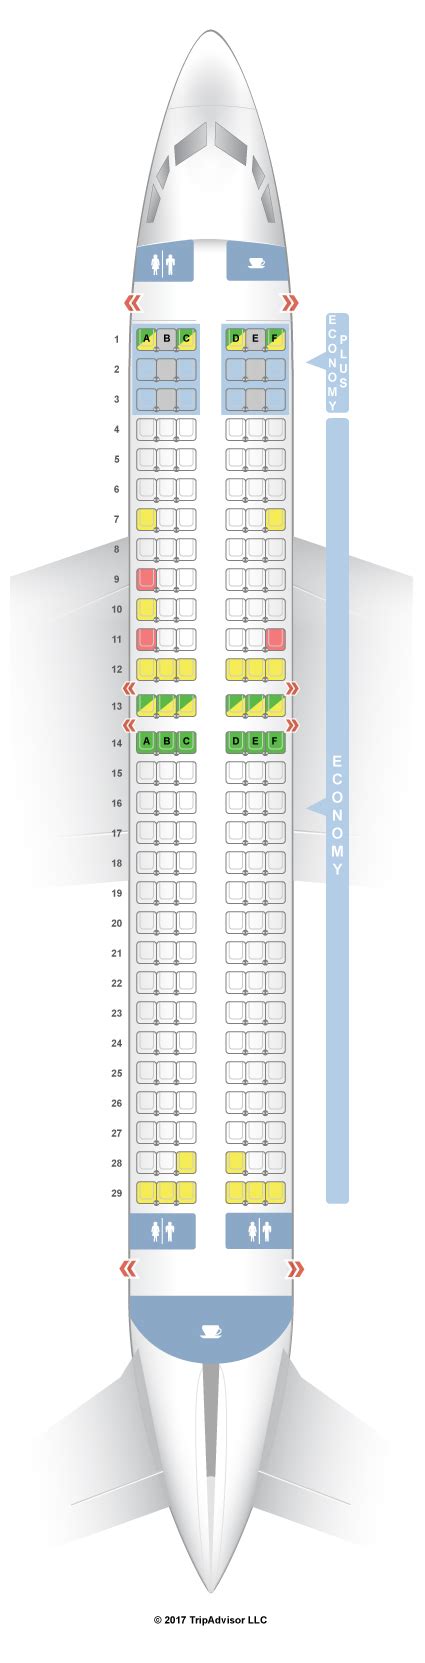 westjet boeing 737-800 seat plan